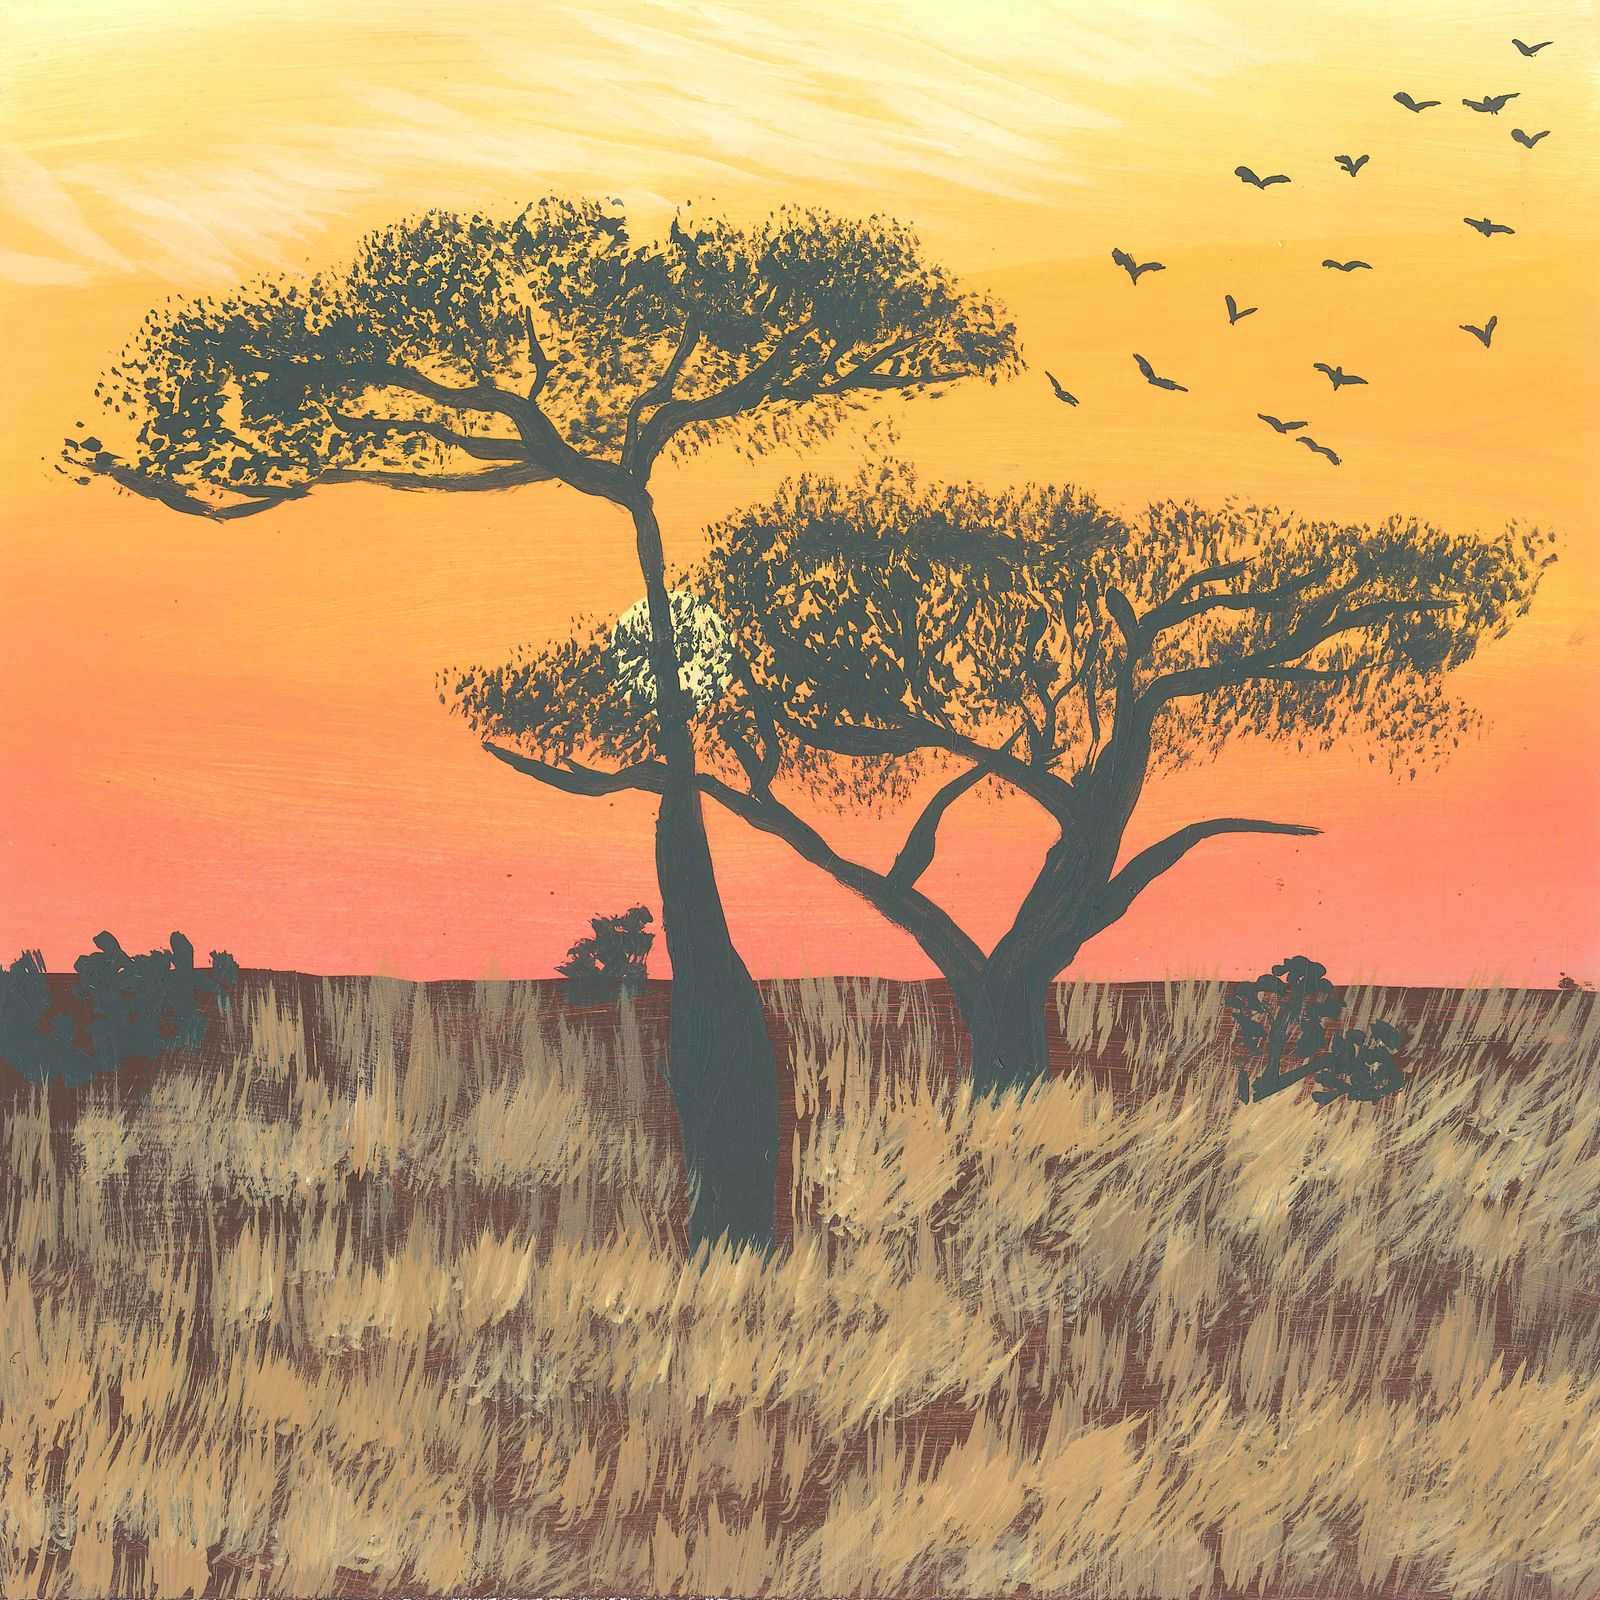 Birdsong in Kruger - nature soundscape - earth.fm